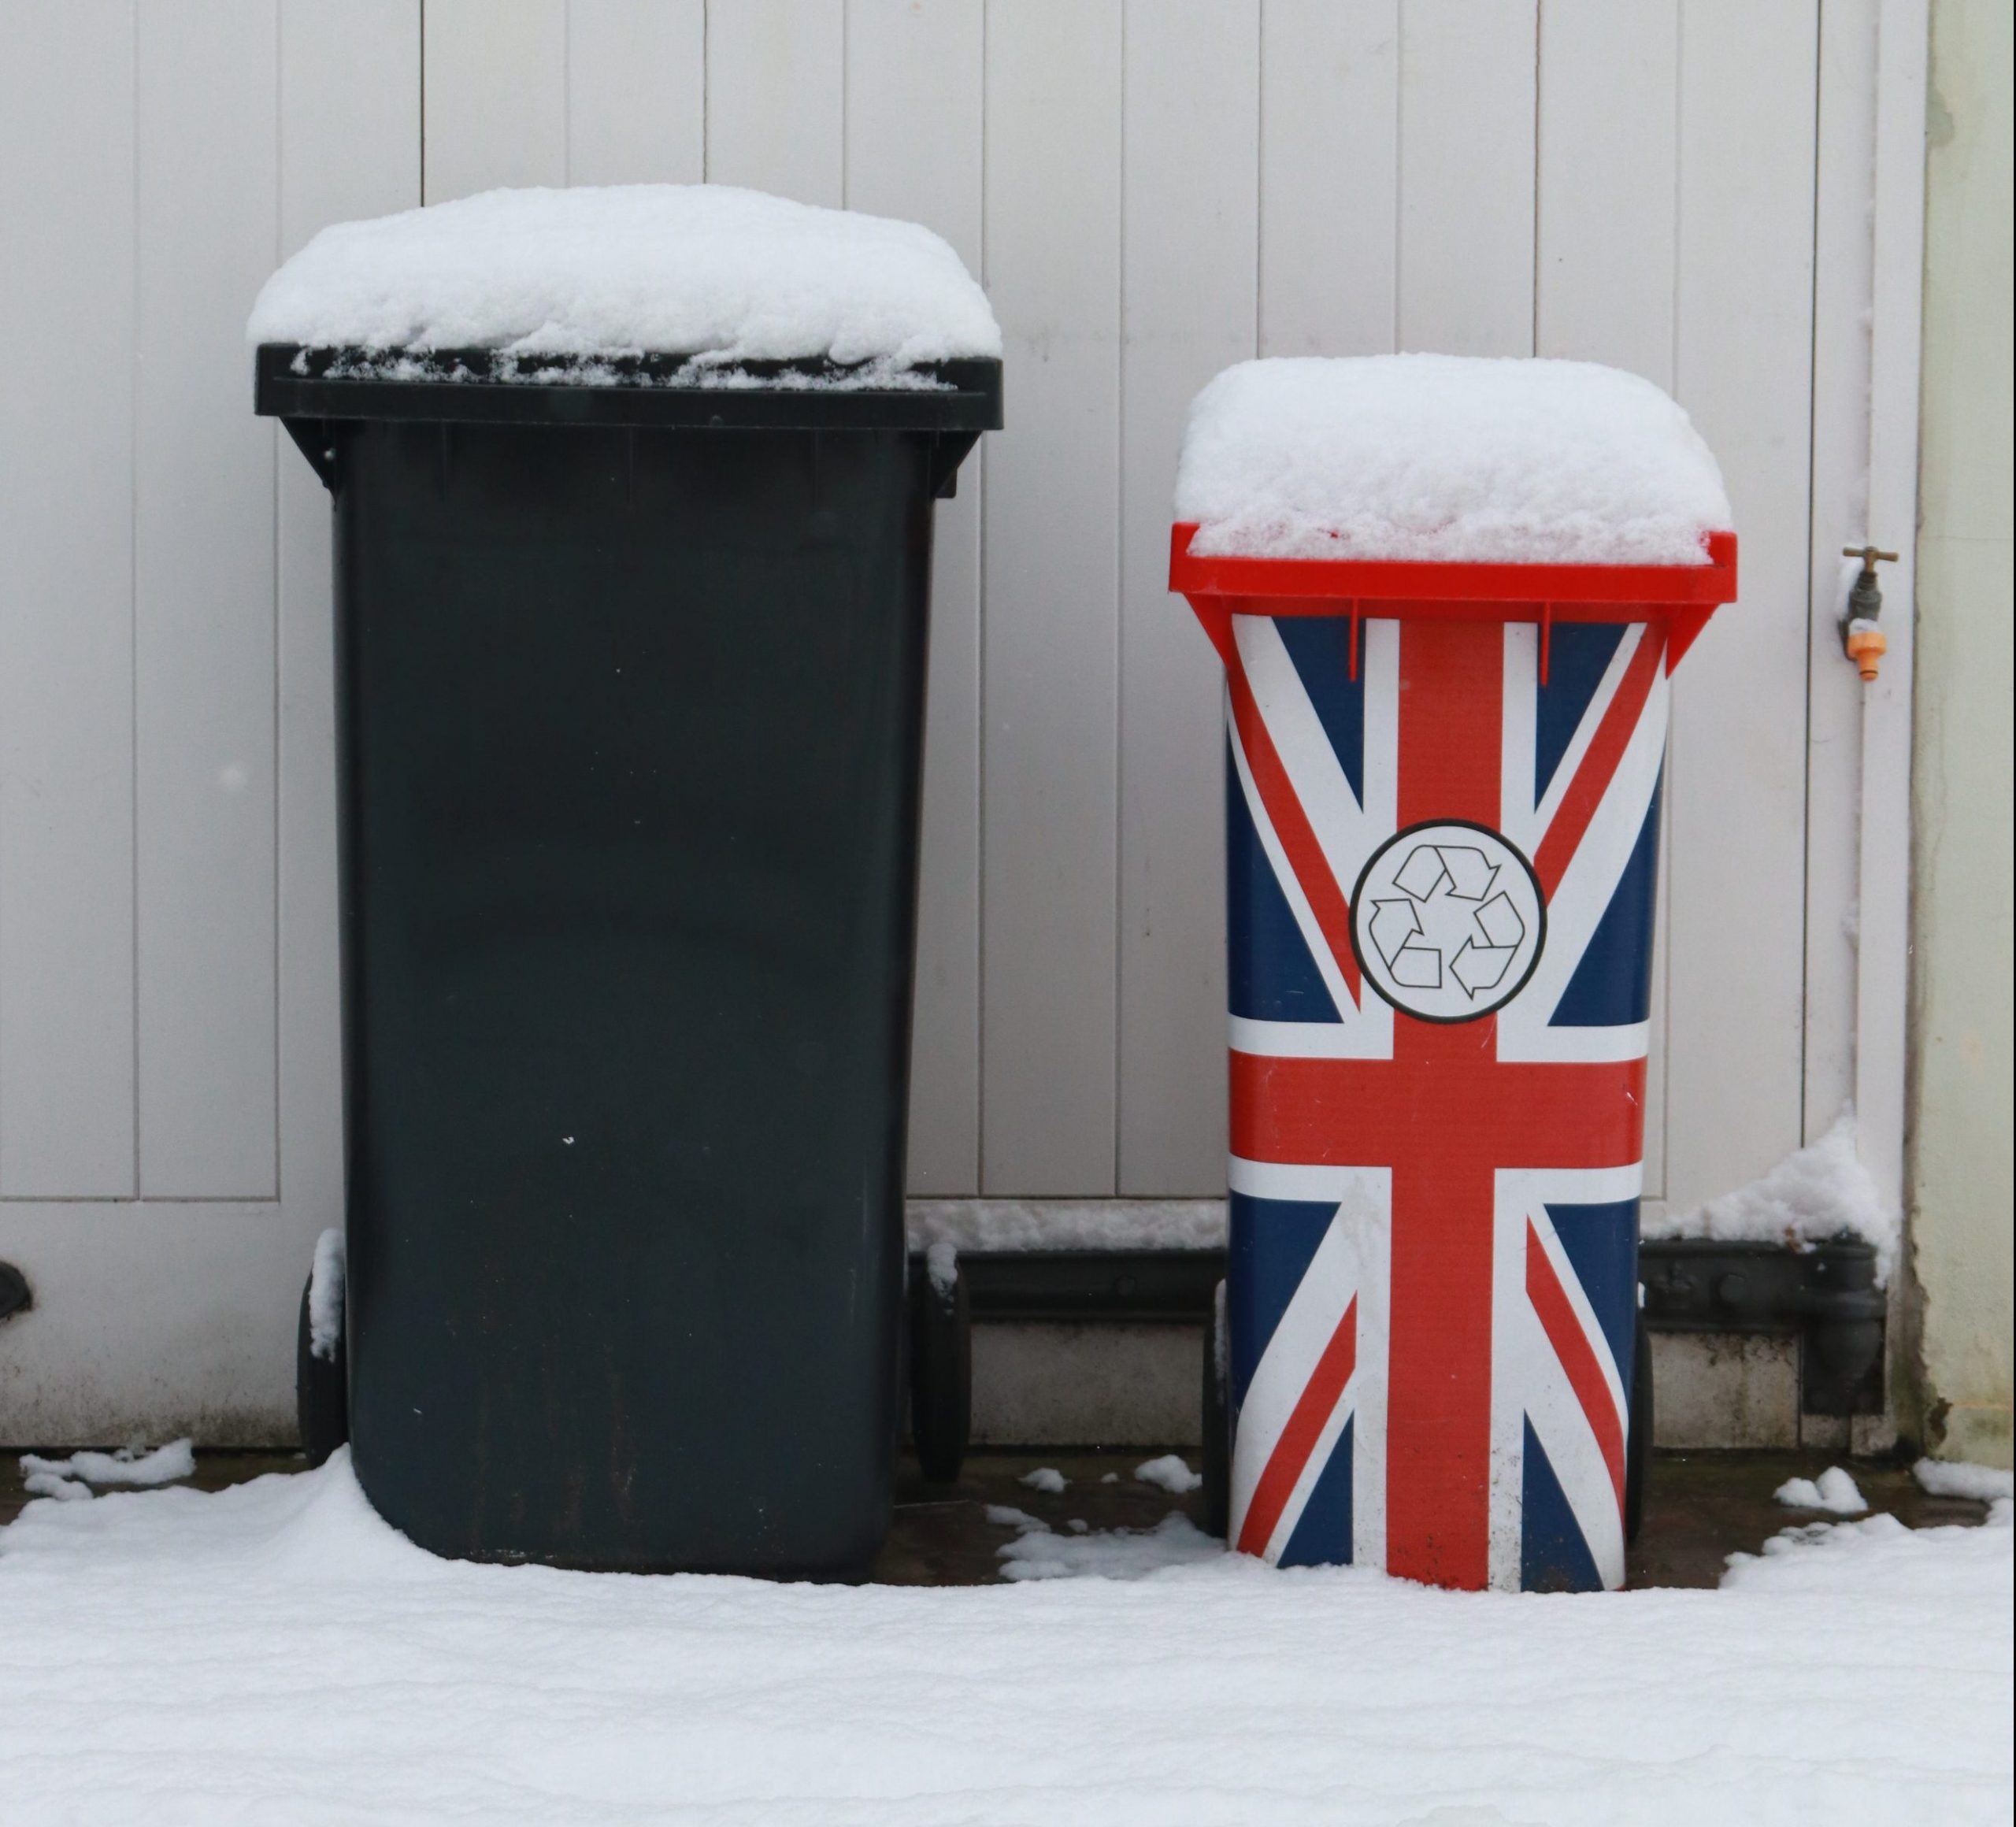 lixeiras com neve em cima, uma lixeira preta e a outra lixeira com a bandeira britanica